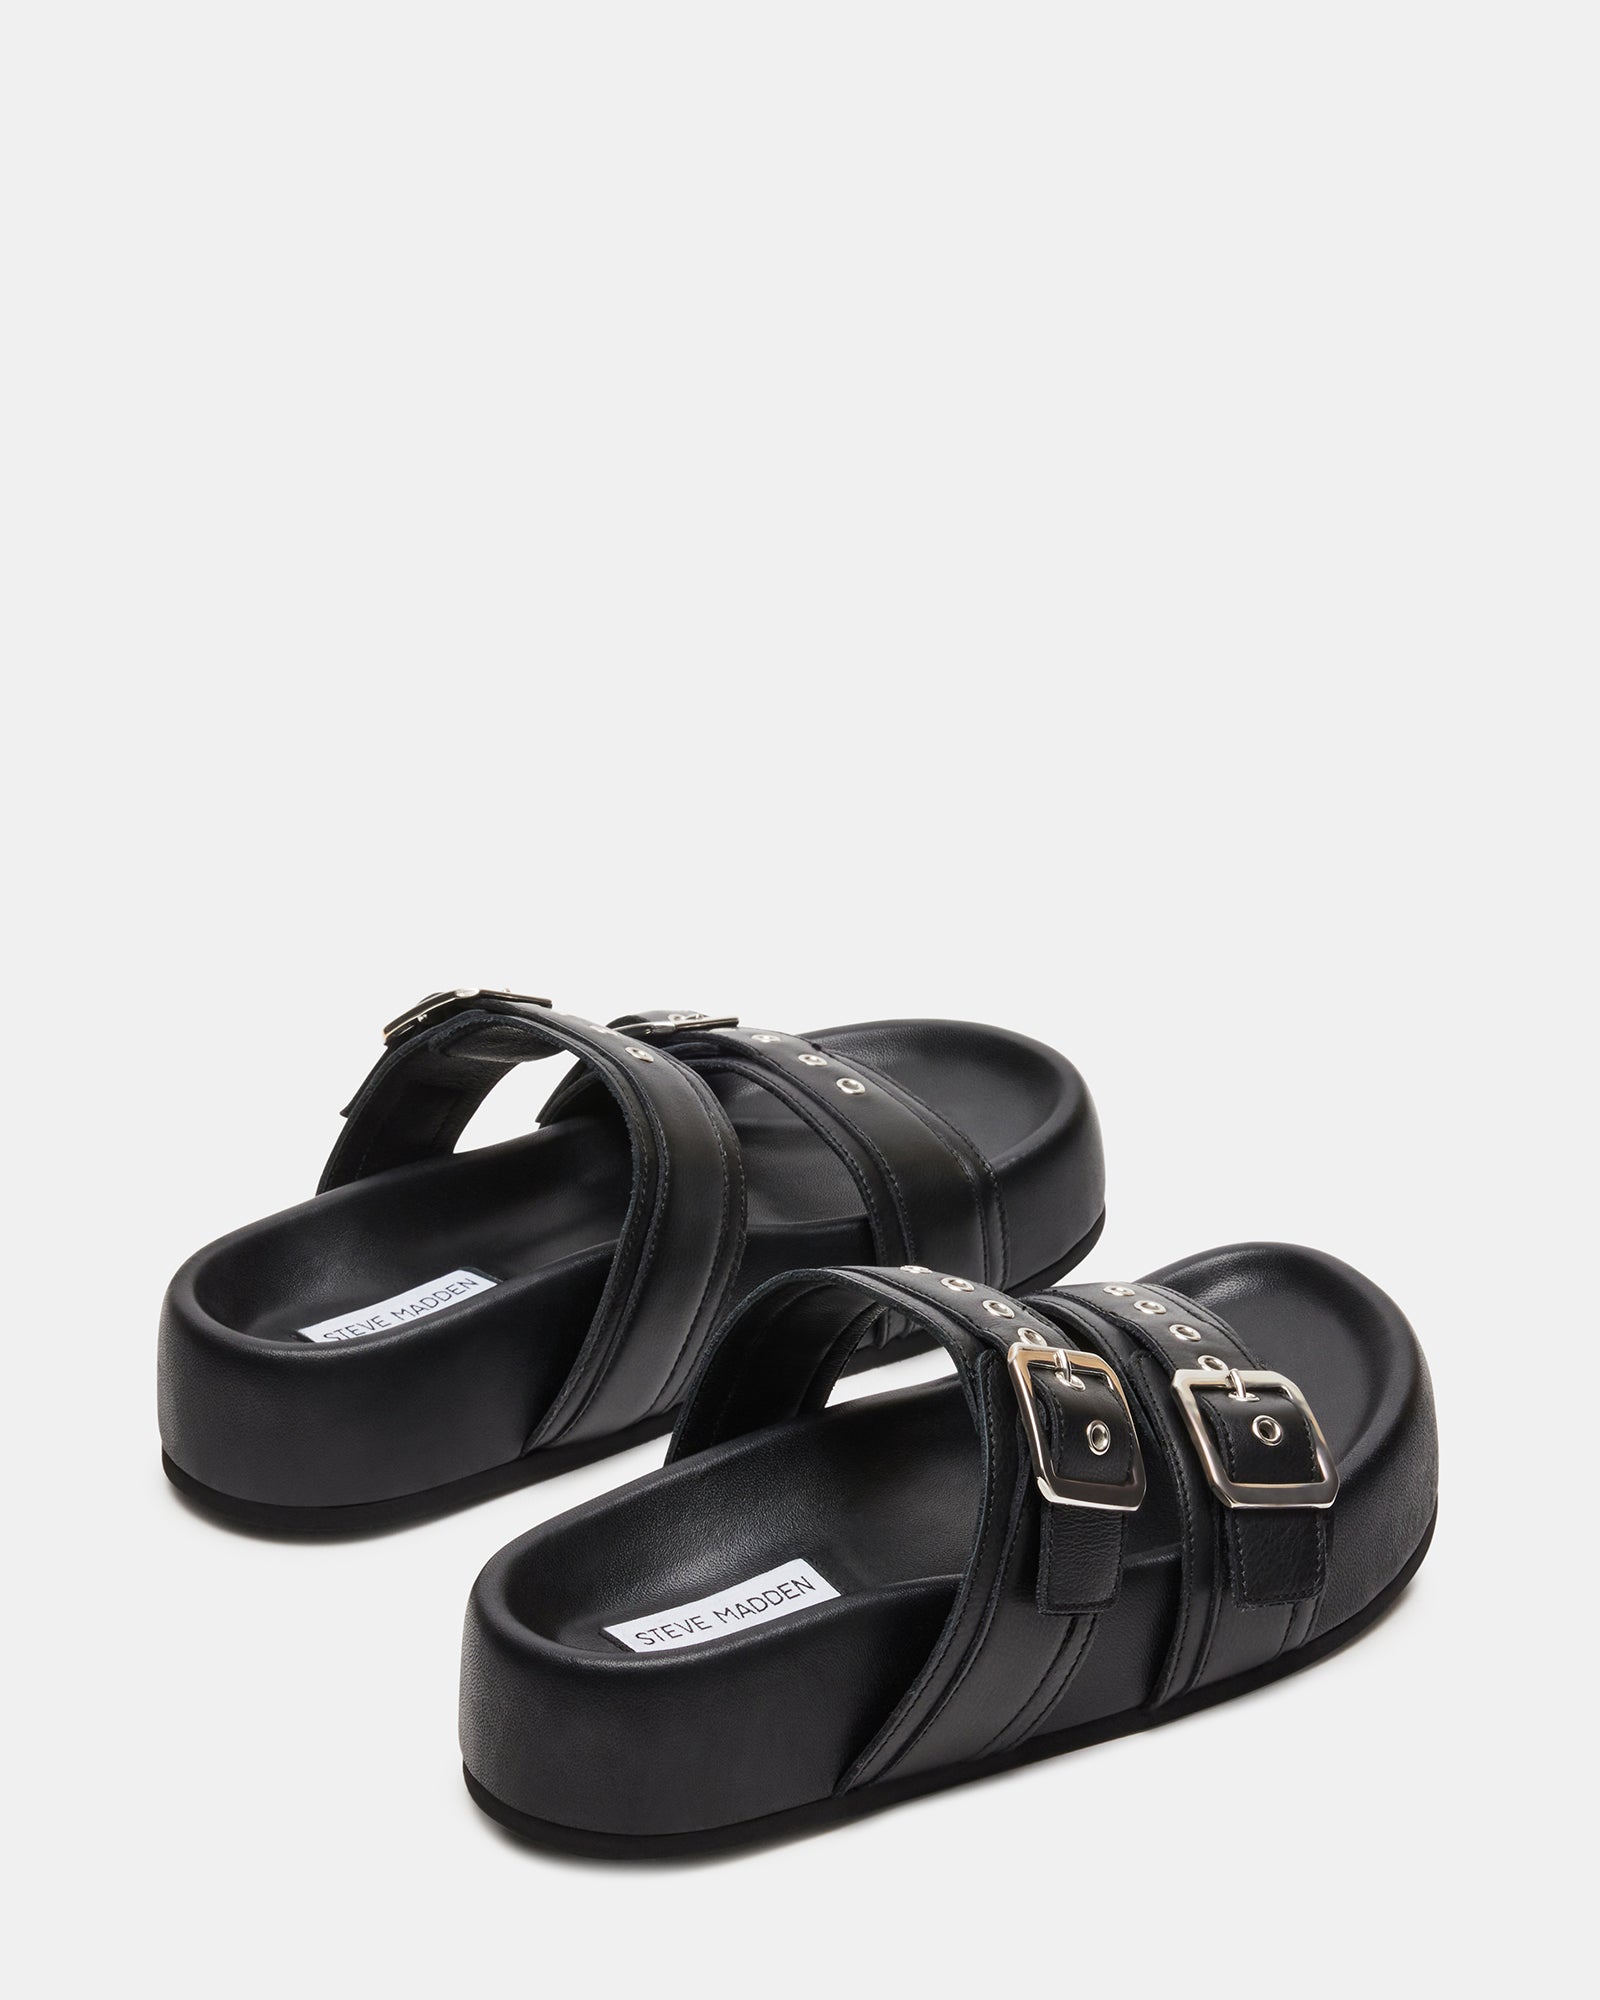 MARCINE Black Leather Flatform Slide | Women's Platform Sandals – Steve ...